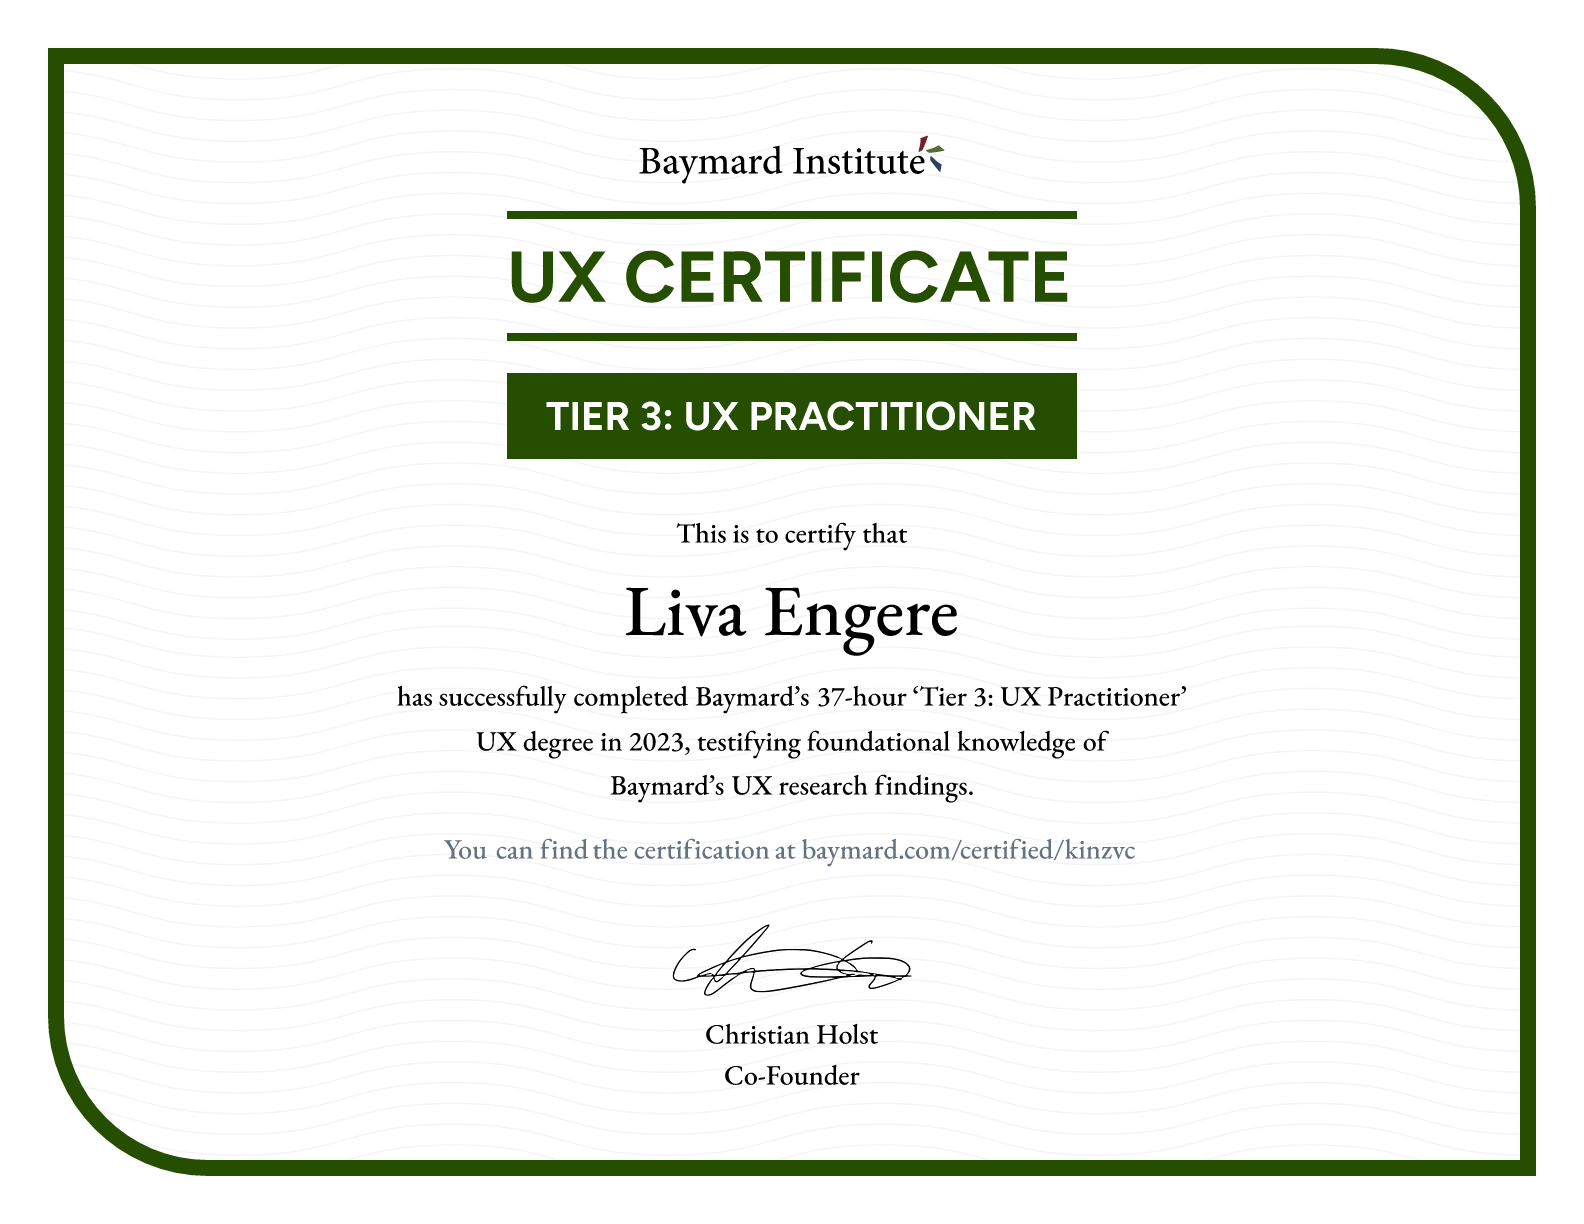 Liva Engere’s certificate